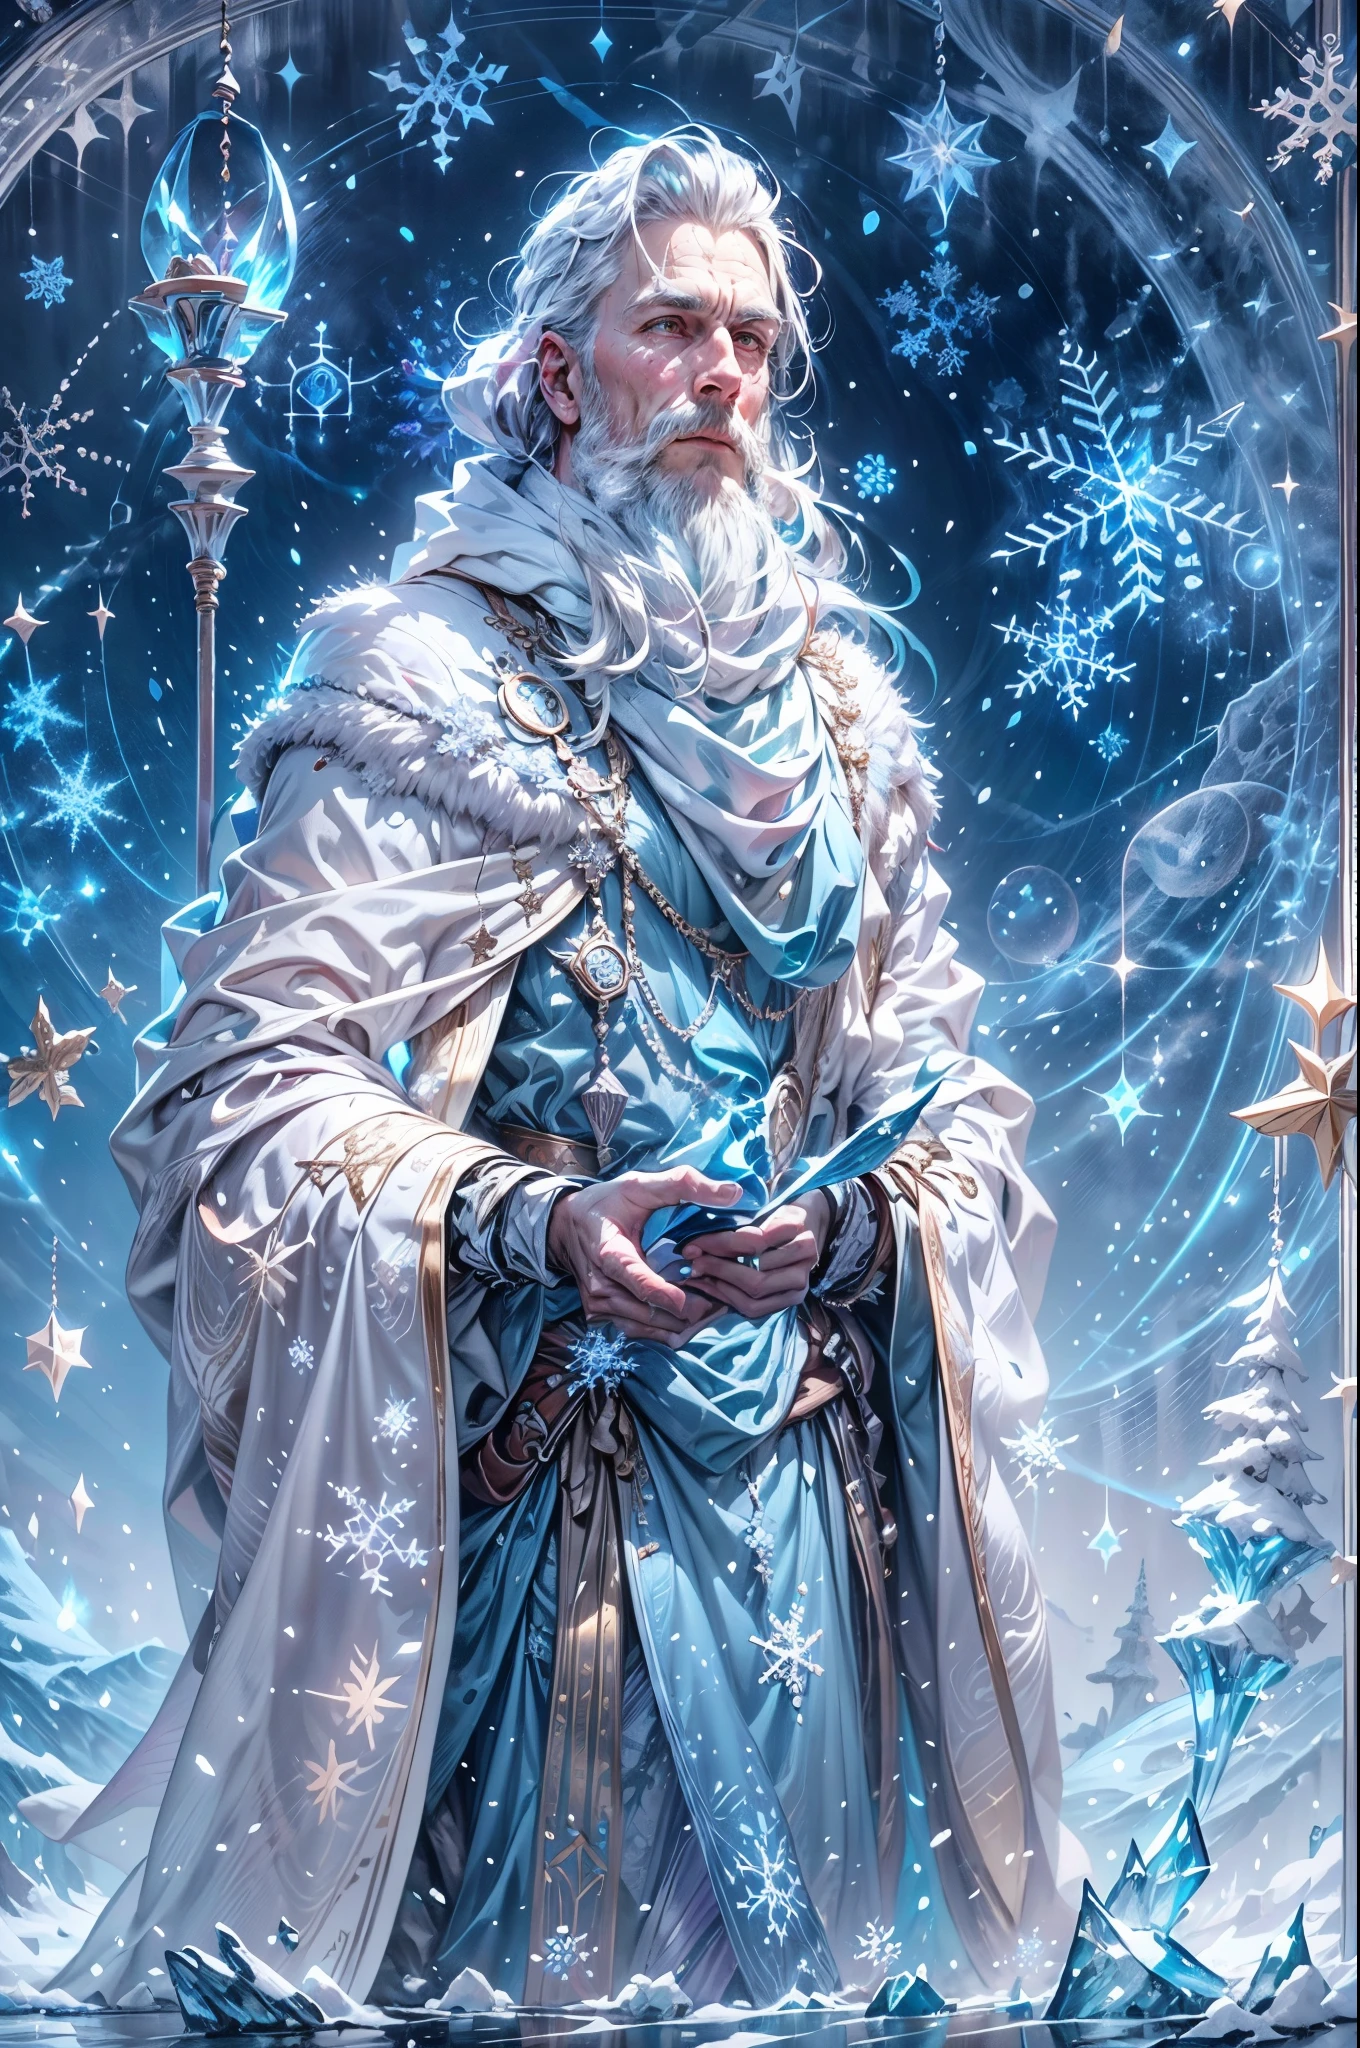 (Un detallado, retrato realista)Santa Claus(,la icónica figura navideña,)como un mago de hielo,in a snowy winter lyscape(dotted with frosted trees y gently falling snowflakes).su(blanco, fluido)barba(glistens with ice crystals y)se extiende(debajo de su cintura).Él lleva(A lo largo de, bata azul),(bordado con delicados patrones de copos de nieve),que ondea en el viento frío, y(un cinturón de plata)se ciñe la cintura. su eyes(brillo con un sutil tono azul)y(su nariz está adornada con un copo de nieve en forma)-anillo de plata en forma. In one hy, él sostiene(un bastón de carámbano brillante)that emits a suave, resplandor fresco.(He stys atop a towering)plataforma de hielo,(Emitiendo una luz azul etérea.)que emana de debajo de ella. El cielo(dons a palette of icy blue y lavender hues),mientras(Luz solar pálida)se asoma a través de las nubes, lanzando un(suave, resplandor fresco)sobre toda la escena.